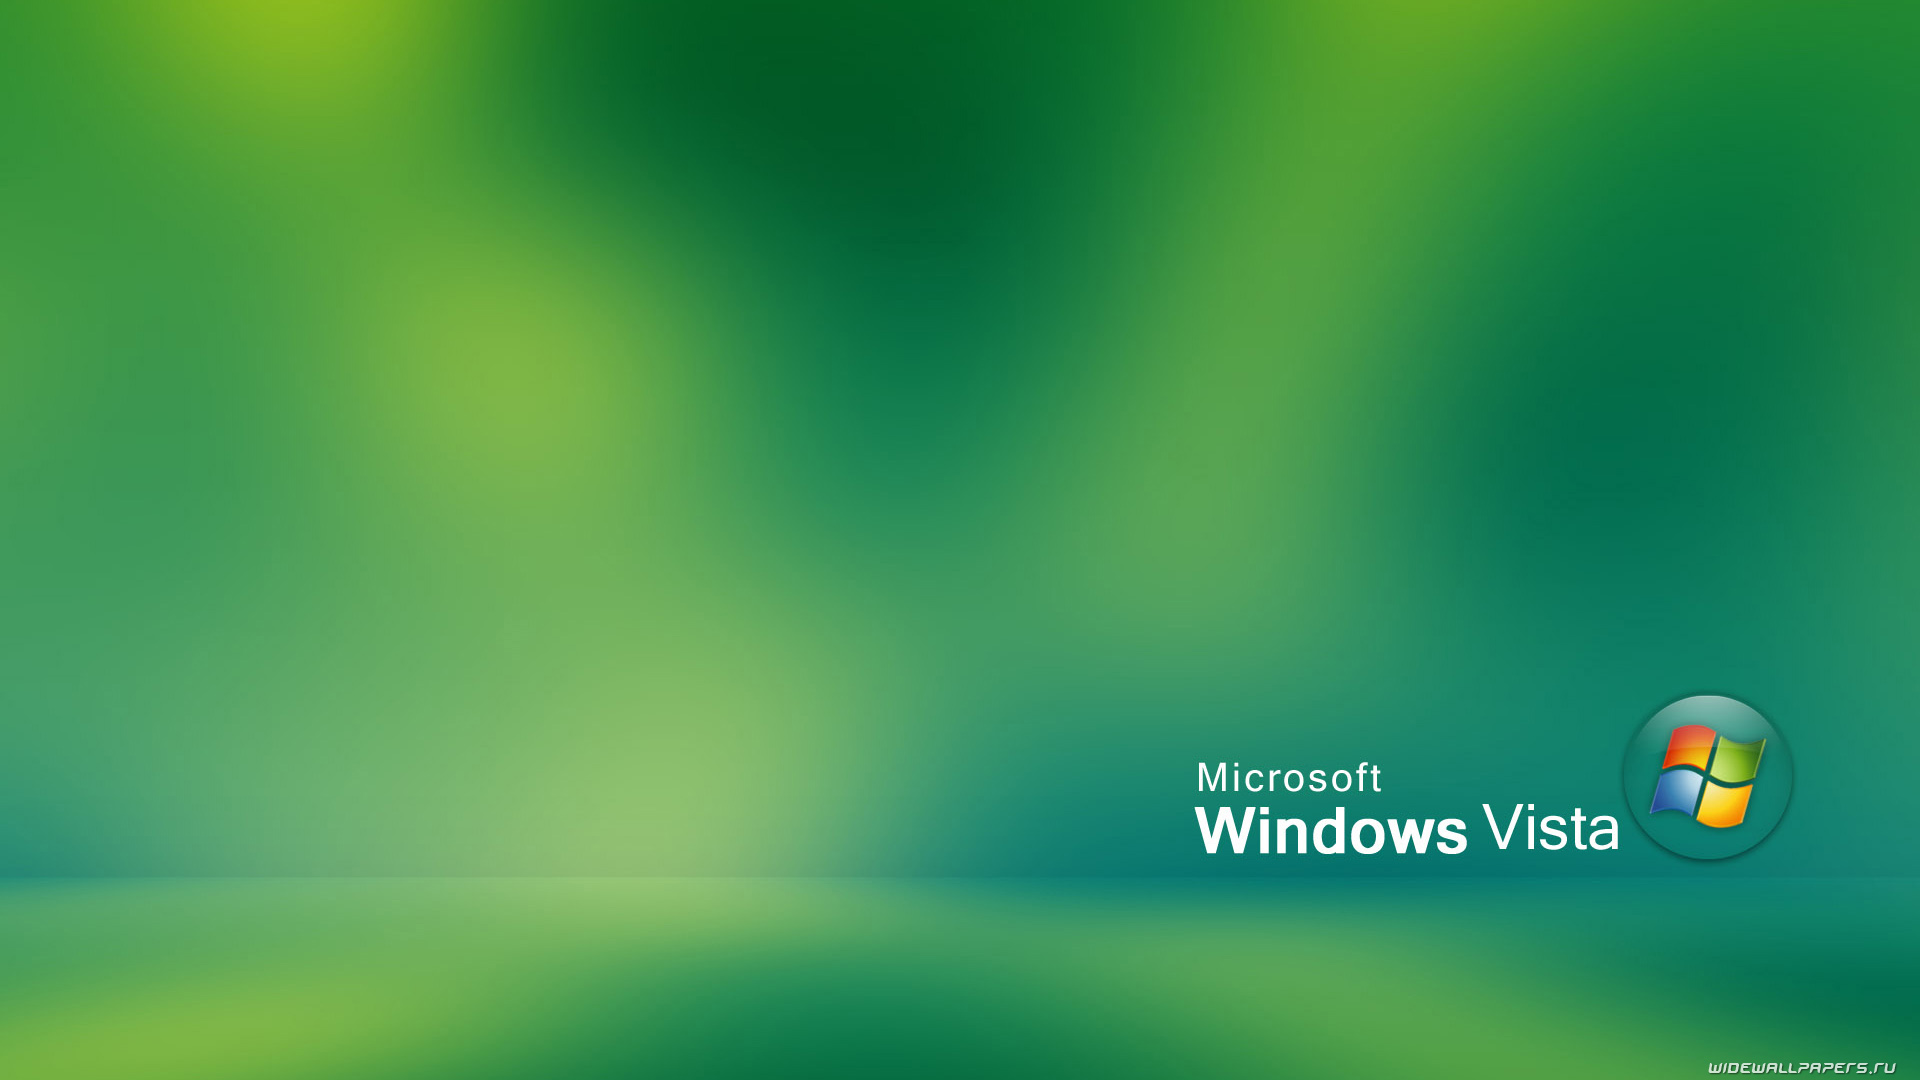 Windows Vista Wallpapers Widescreen - HD Wallpaper 